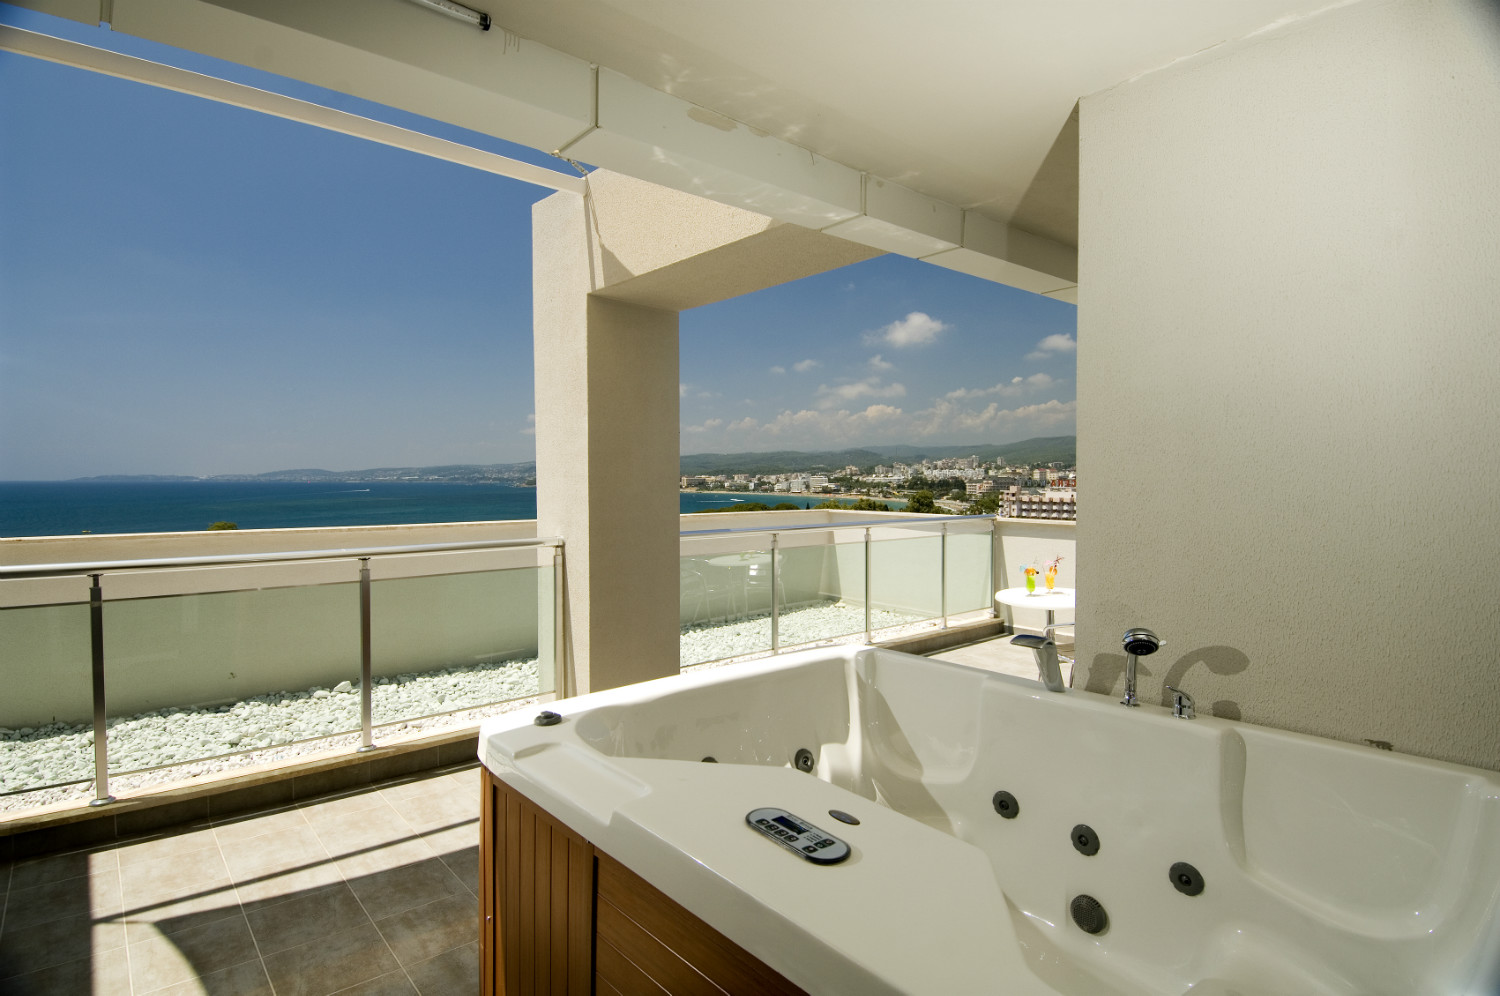 Adenya Hotel&Resort Oda Balkon Deniz Görünümü